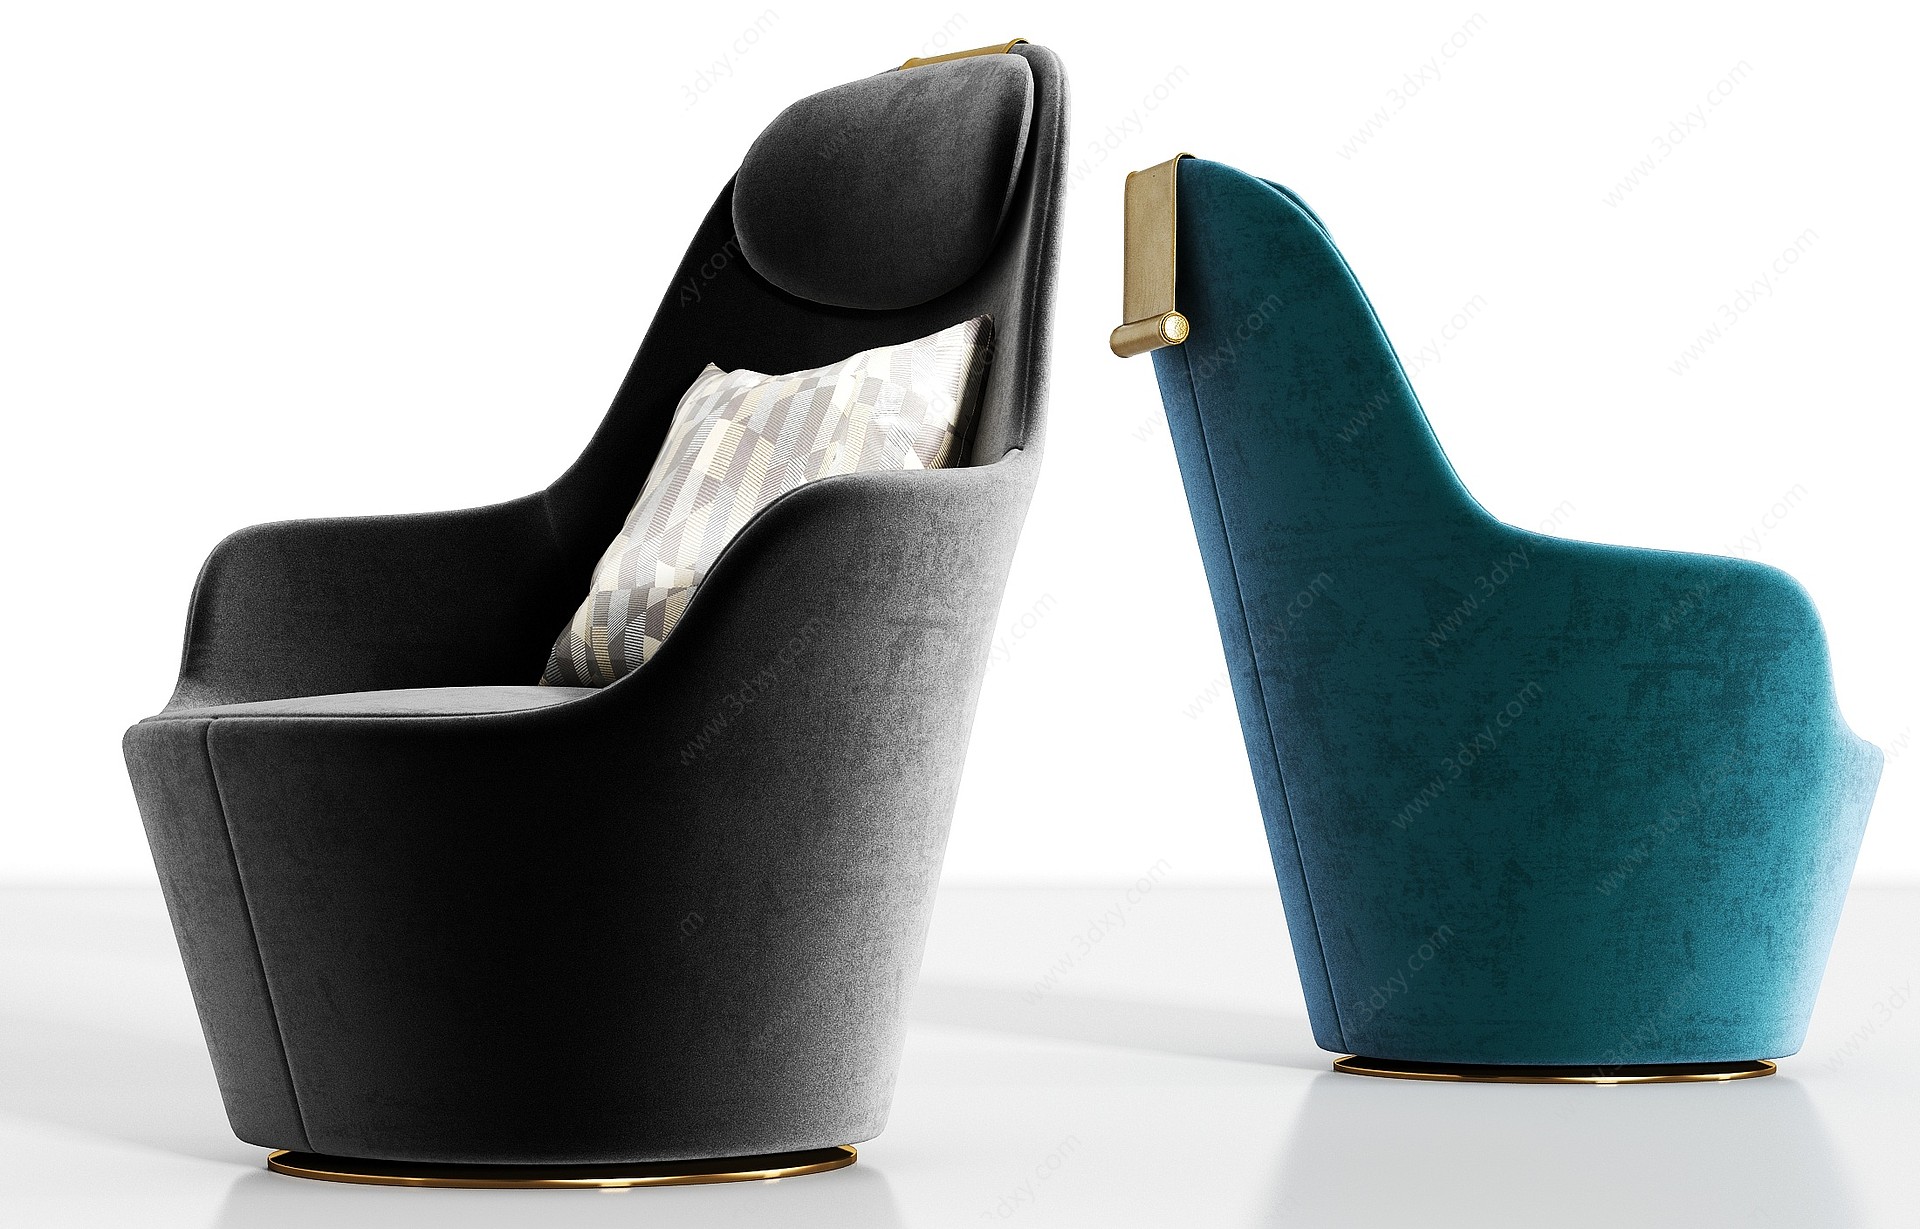 现代轻奢绒布单人沙发组合3D模型